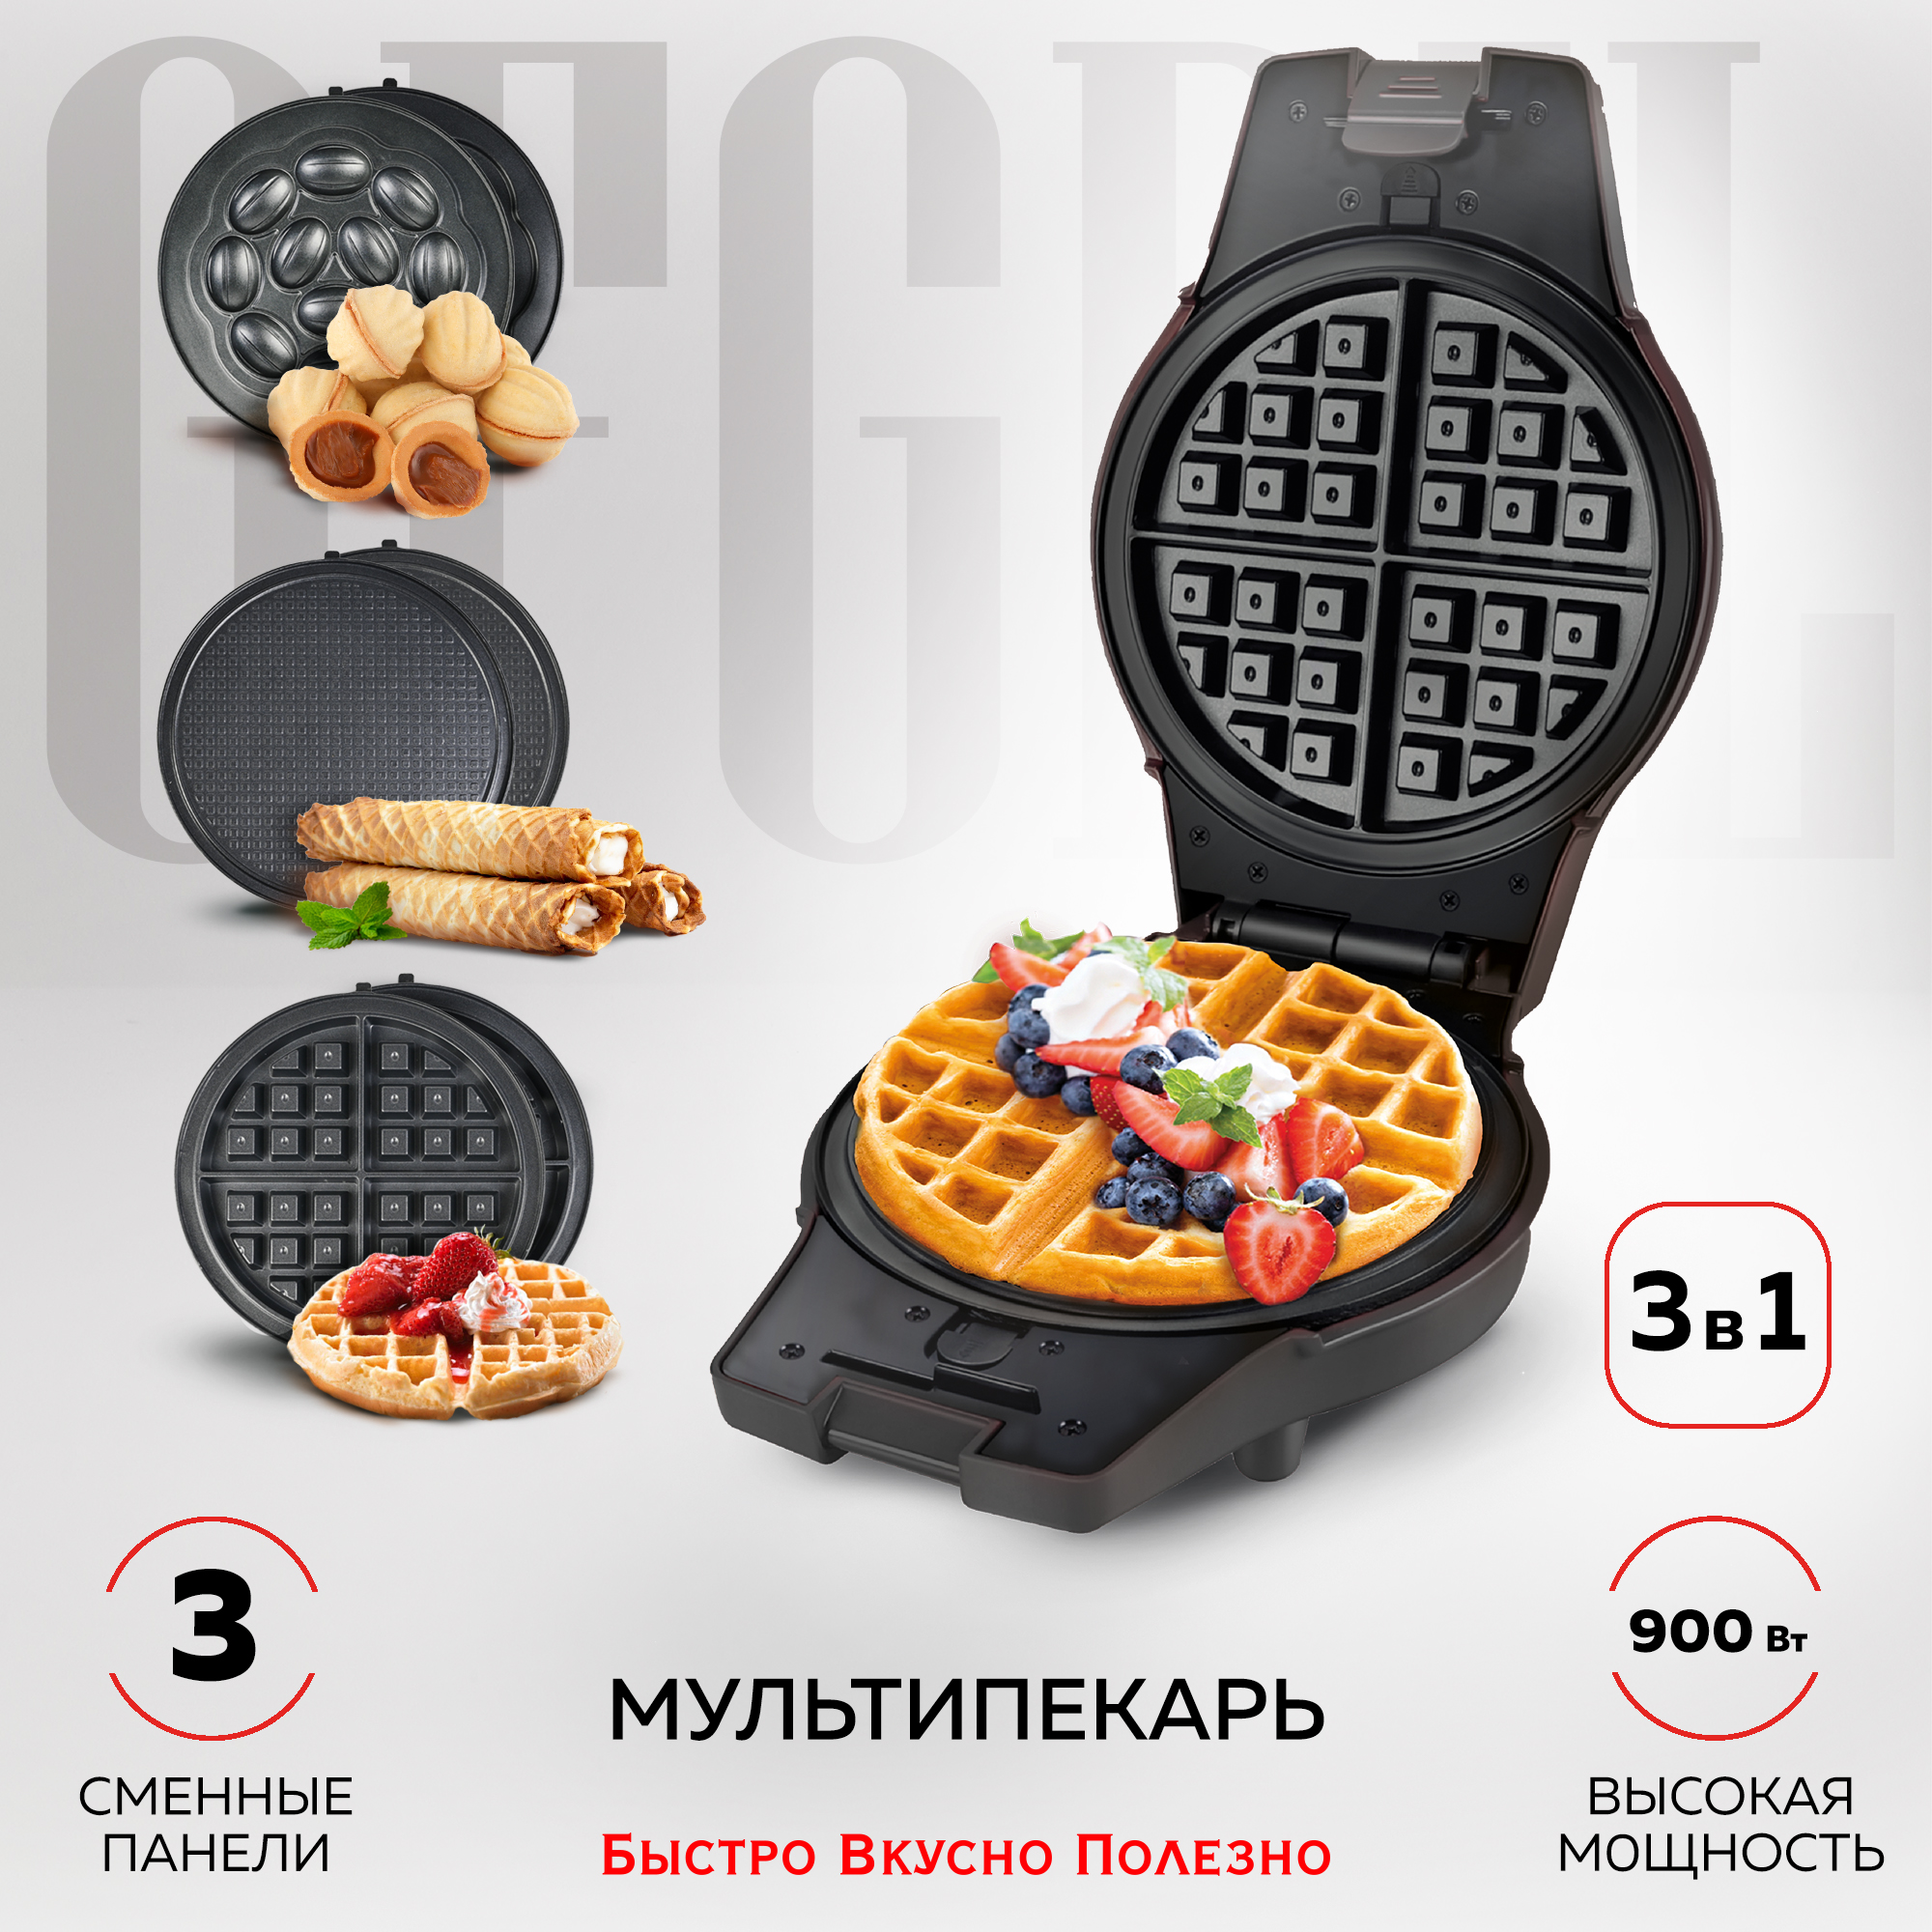 Мультипекарь GFGRIL GFW-042 черный, купить в Москве, цены в интернет-магазинах на Мегамаркет